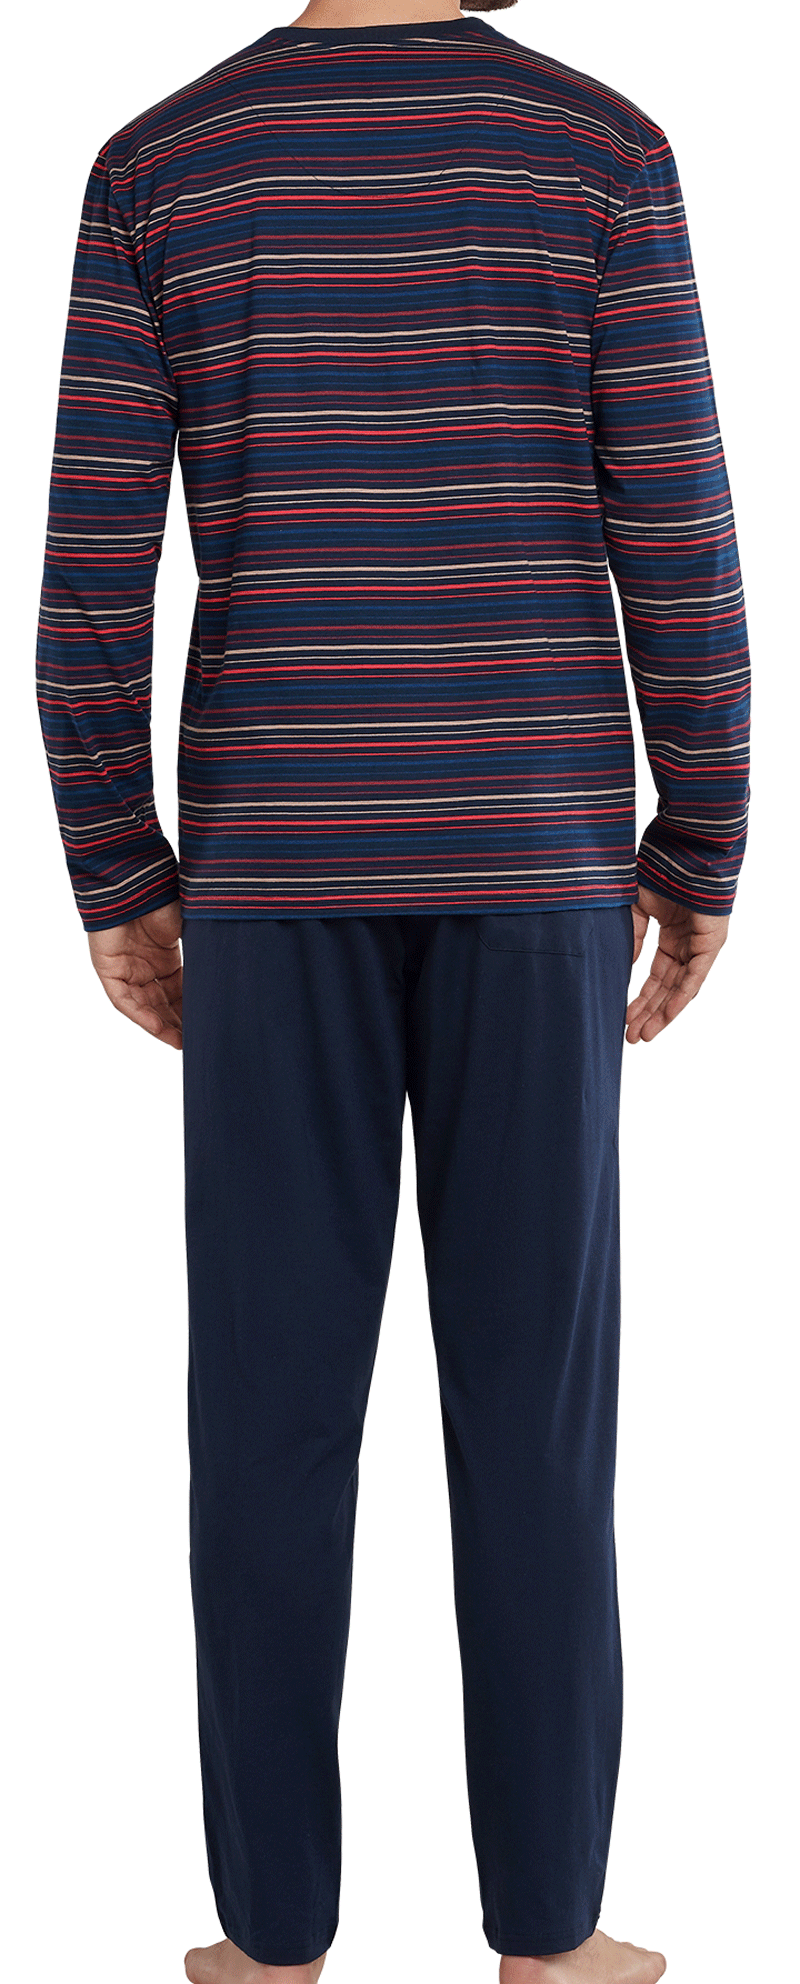 Schiesser heren pyjama V-hals blauw rood achterkant